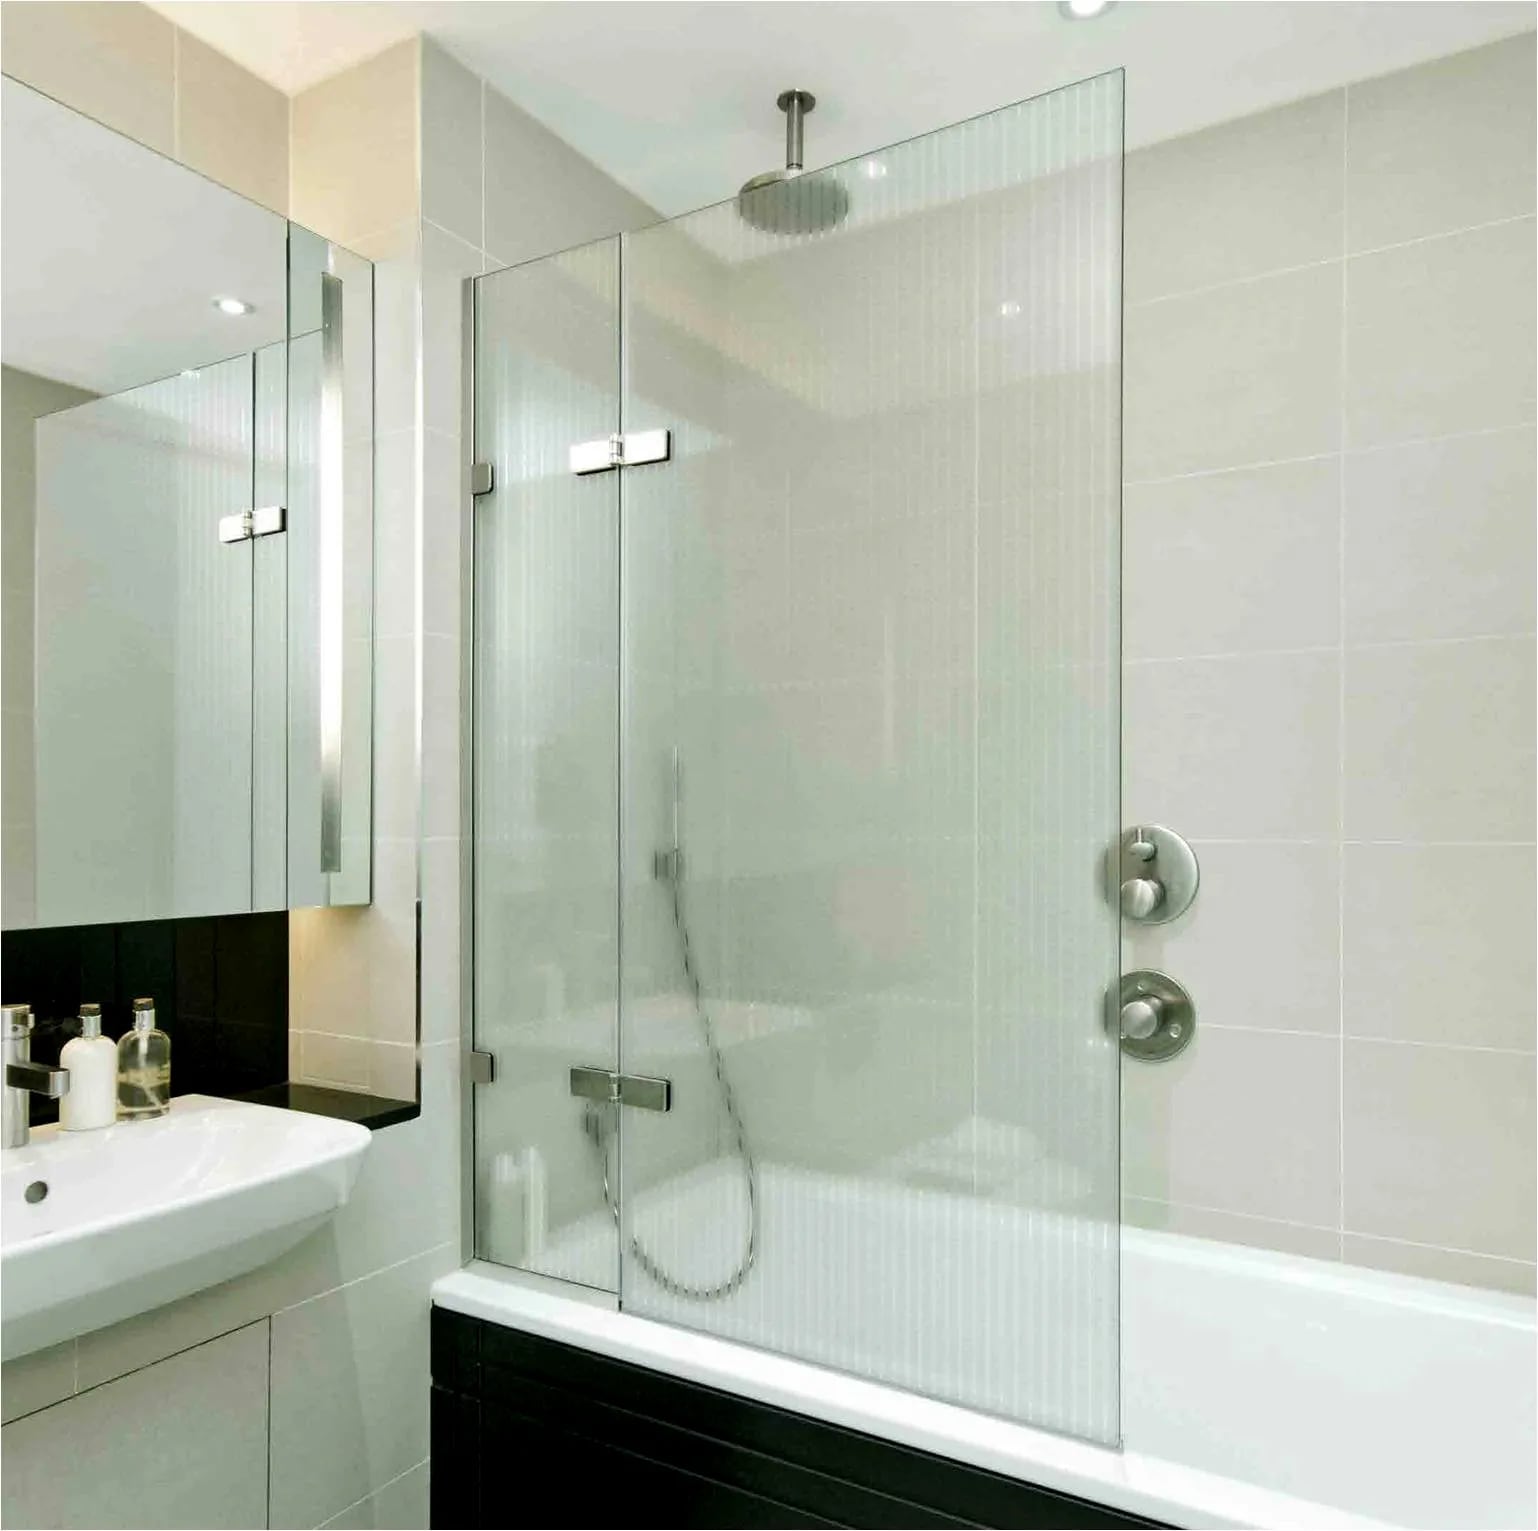 El Dreamline tiene la capacidad para fusionar la función y la estética, siendo ideal para mamparas de baño.